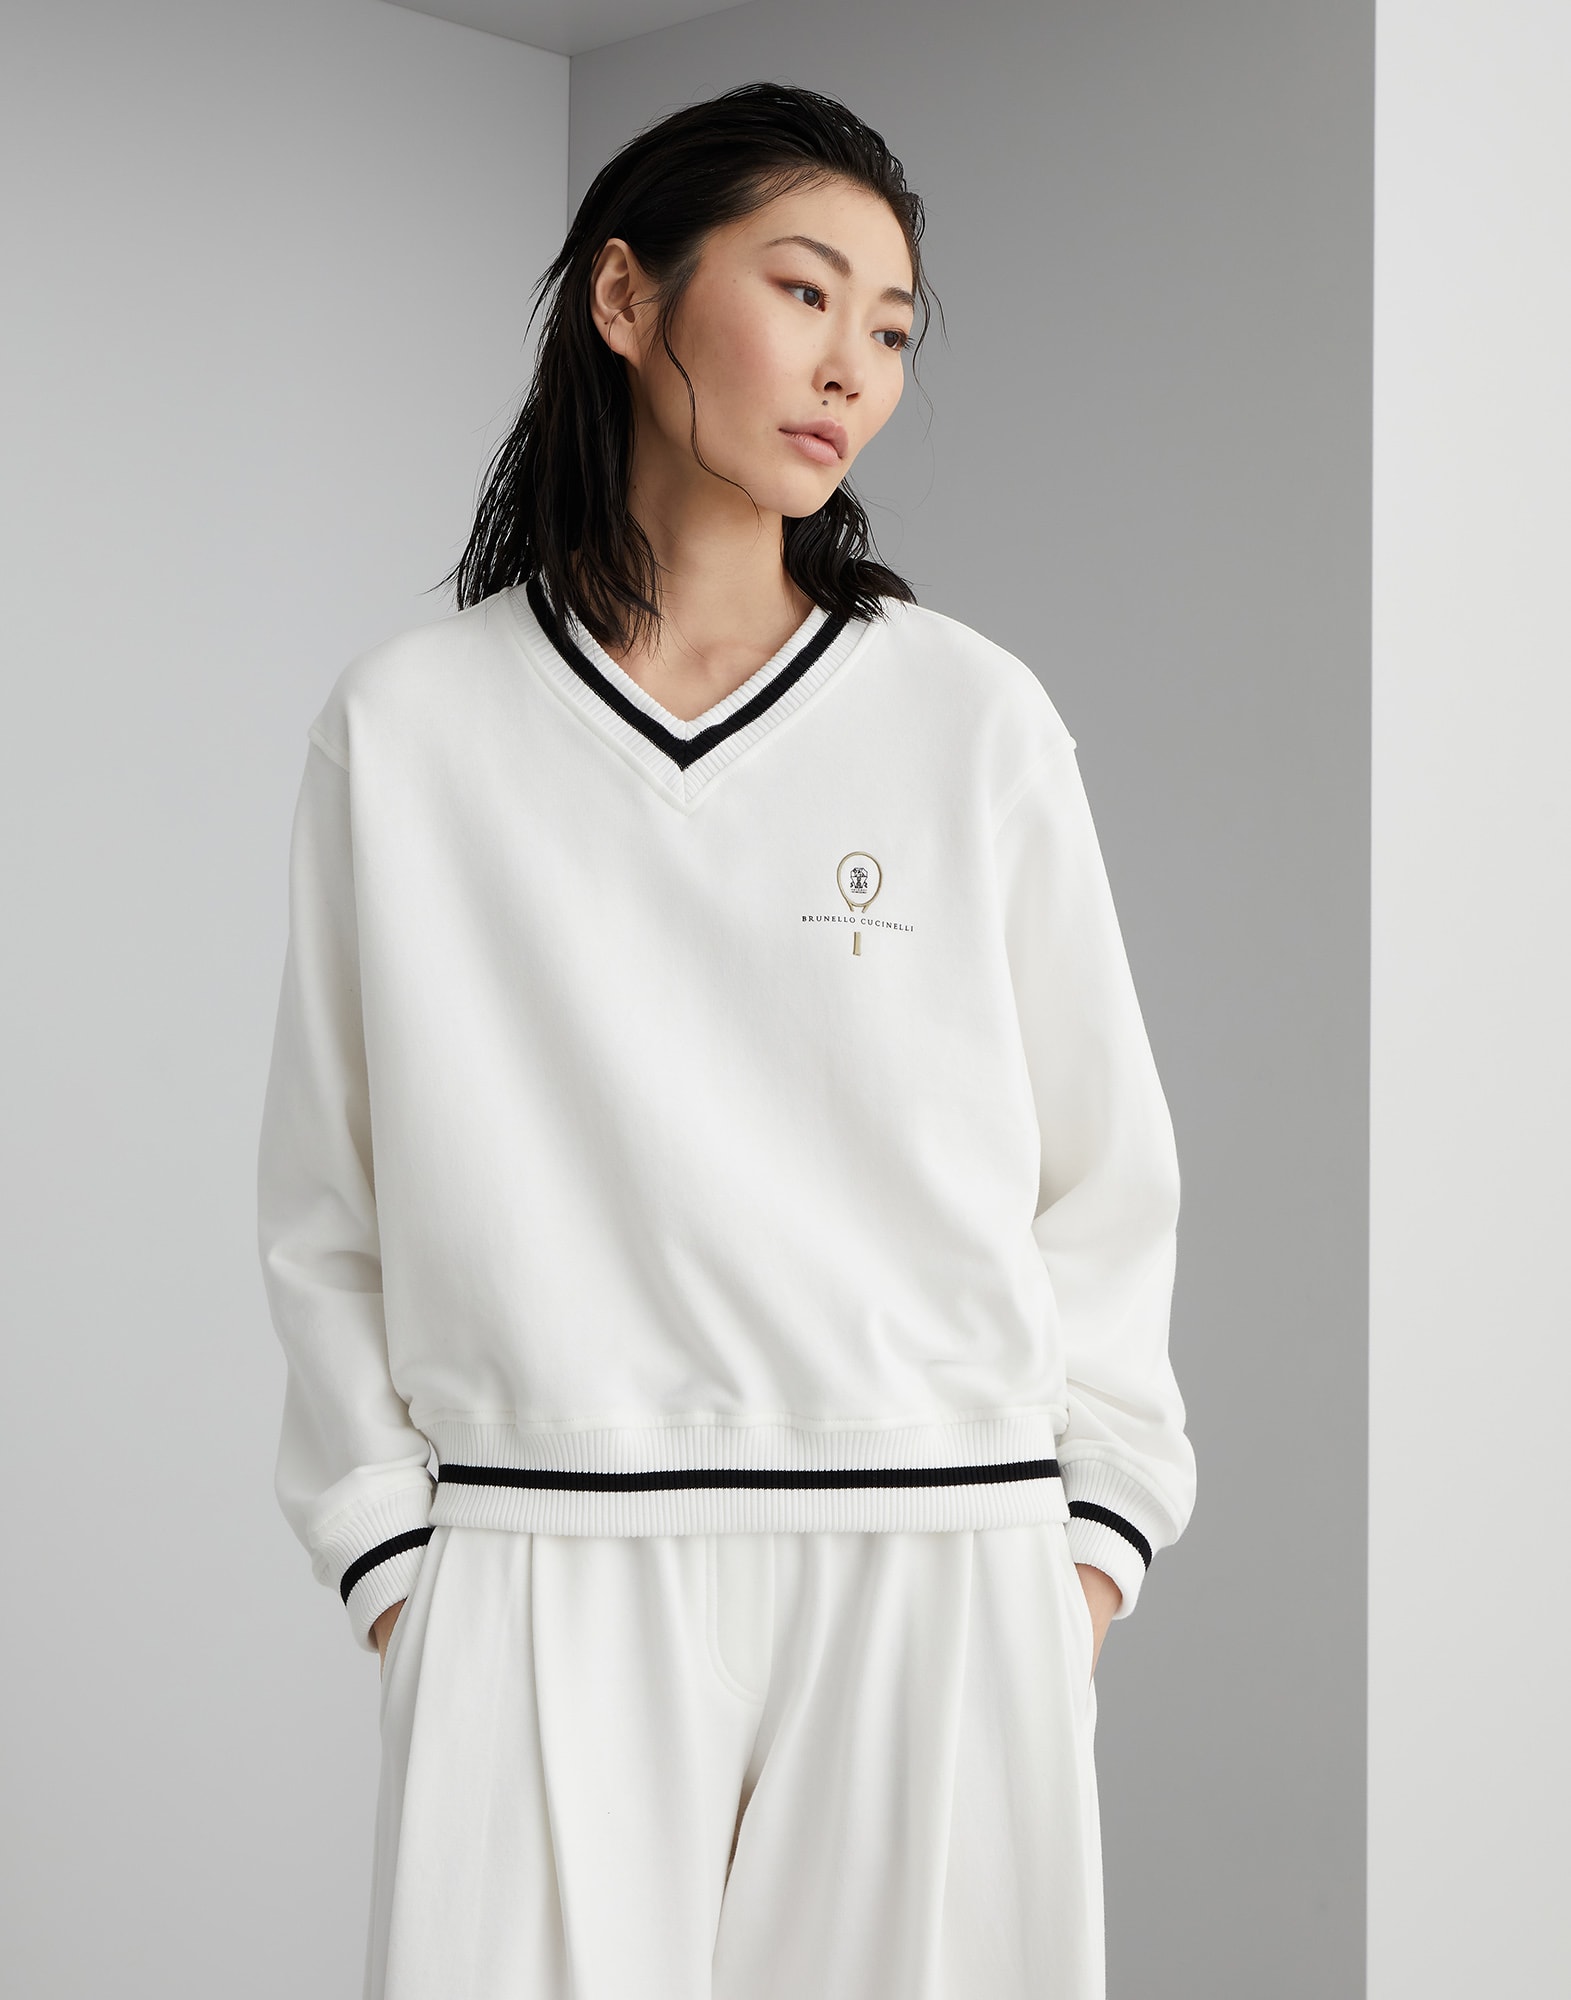 Sweatshirt with Tennis logo Off-White Woman - Brunello Cucinelli